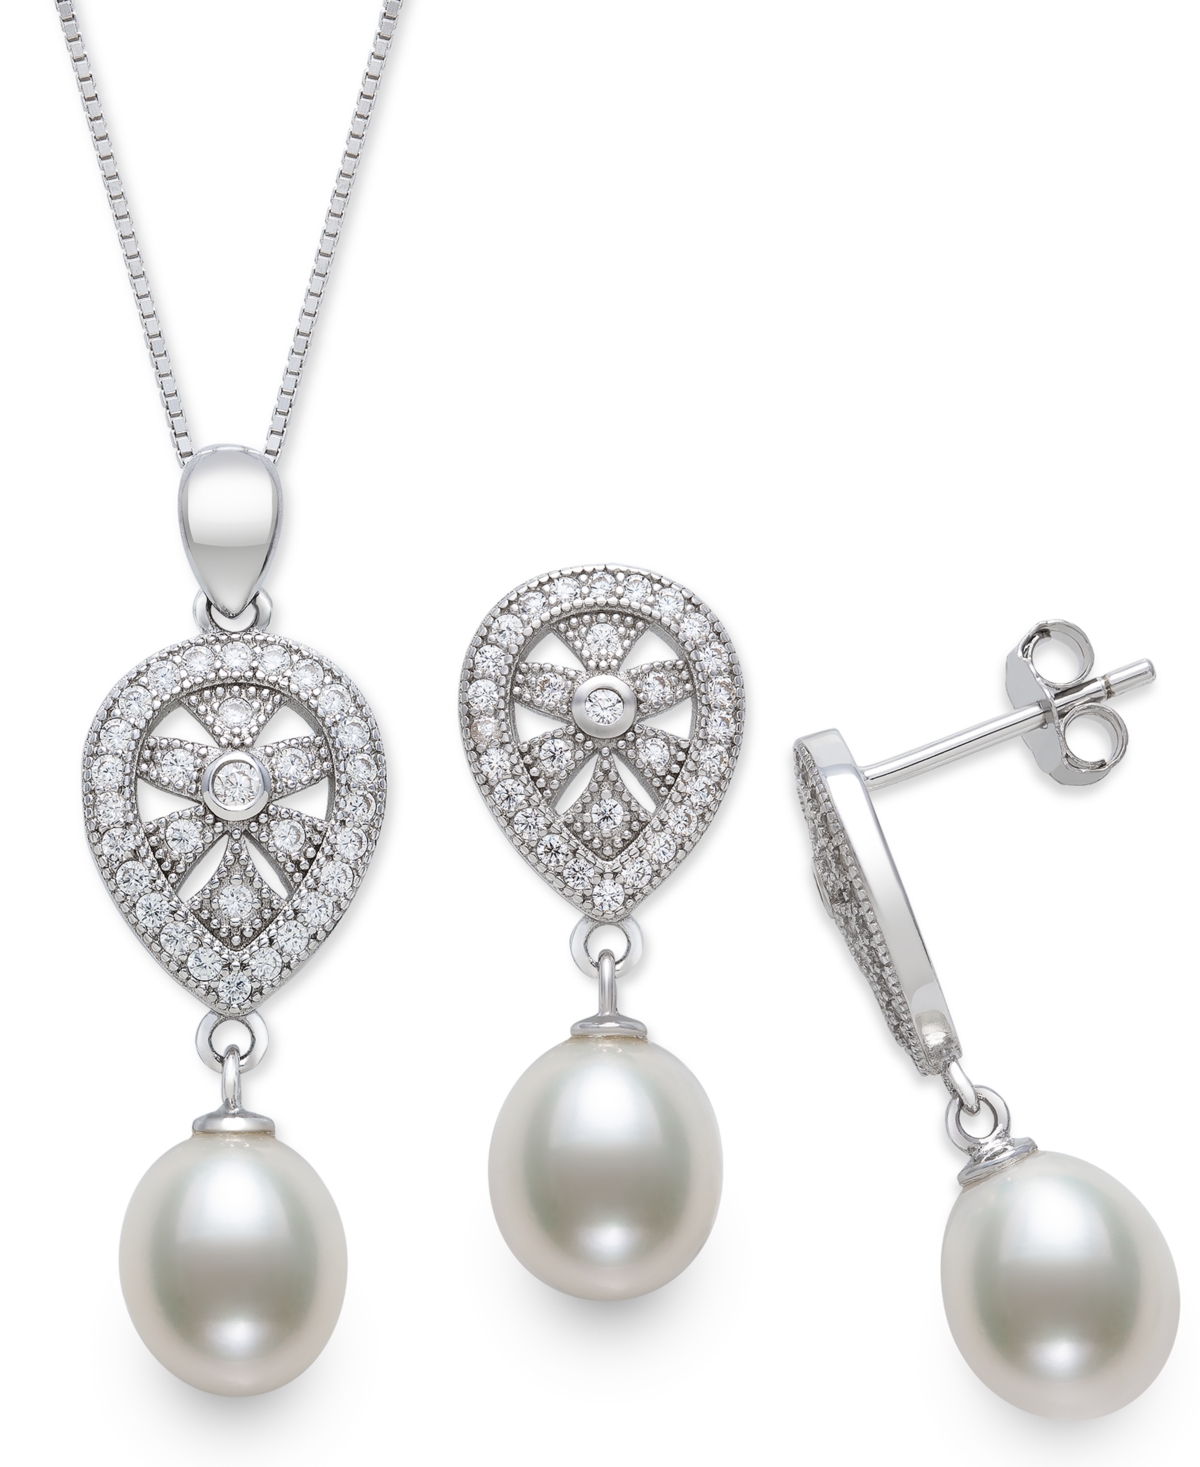 Belle de Mer 2-Pc. Set Cultured Freshwater Pearl (8mm) & Cubic Zirconia Teardrop Pendant Necklace & Matching Drop Earrings in Sterling Silver